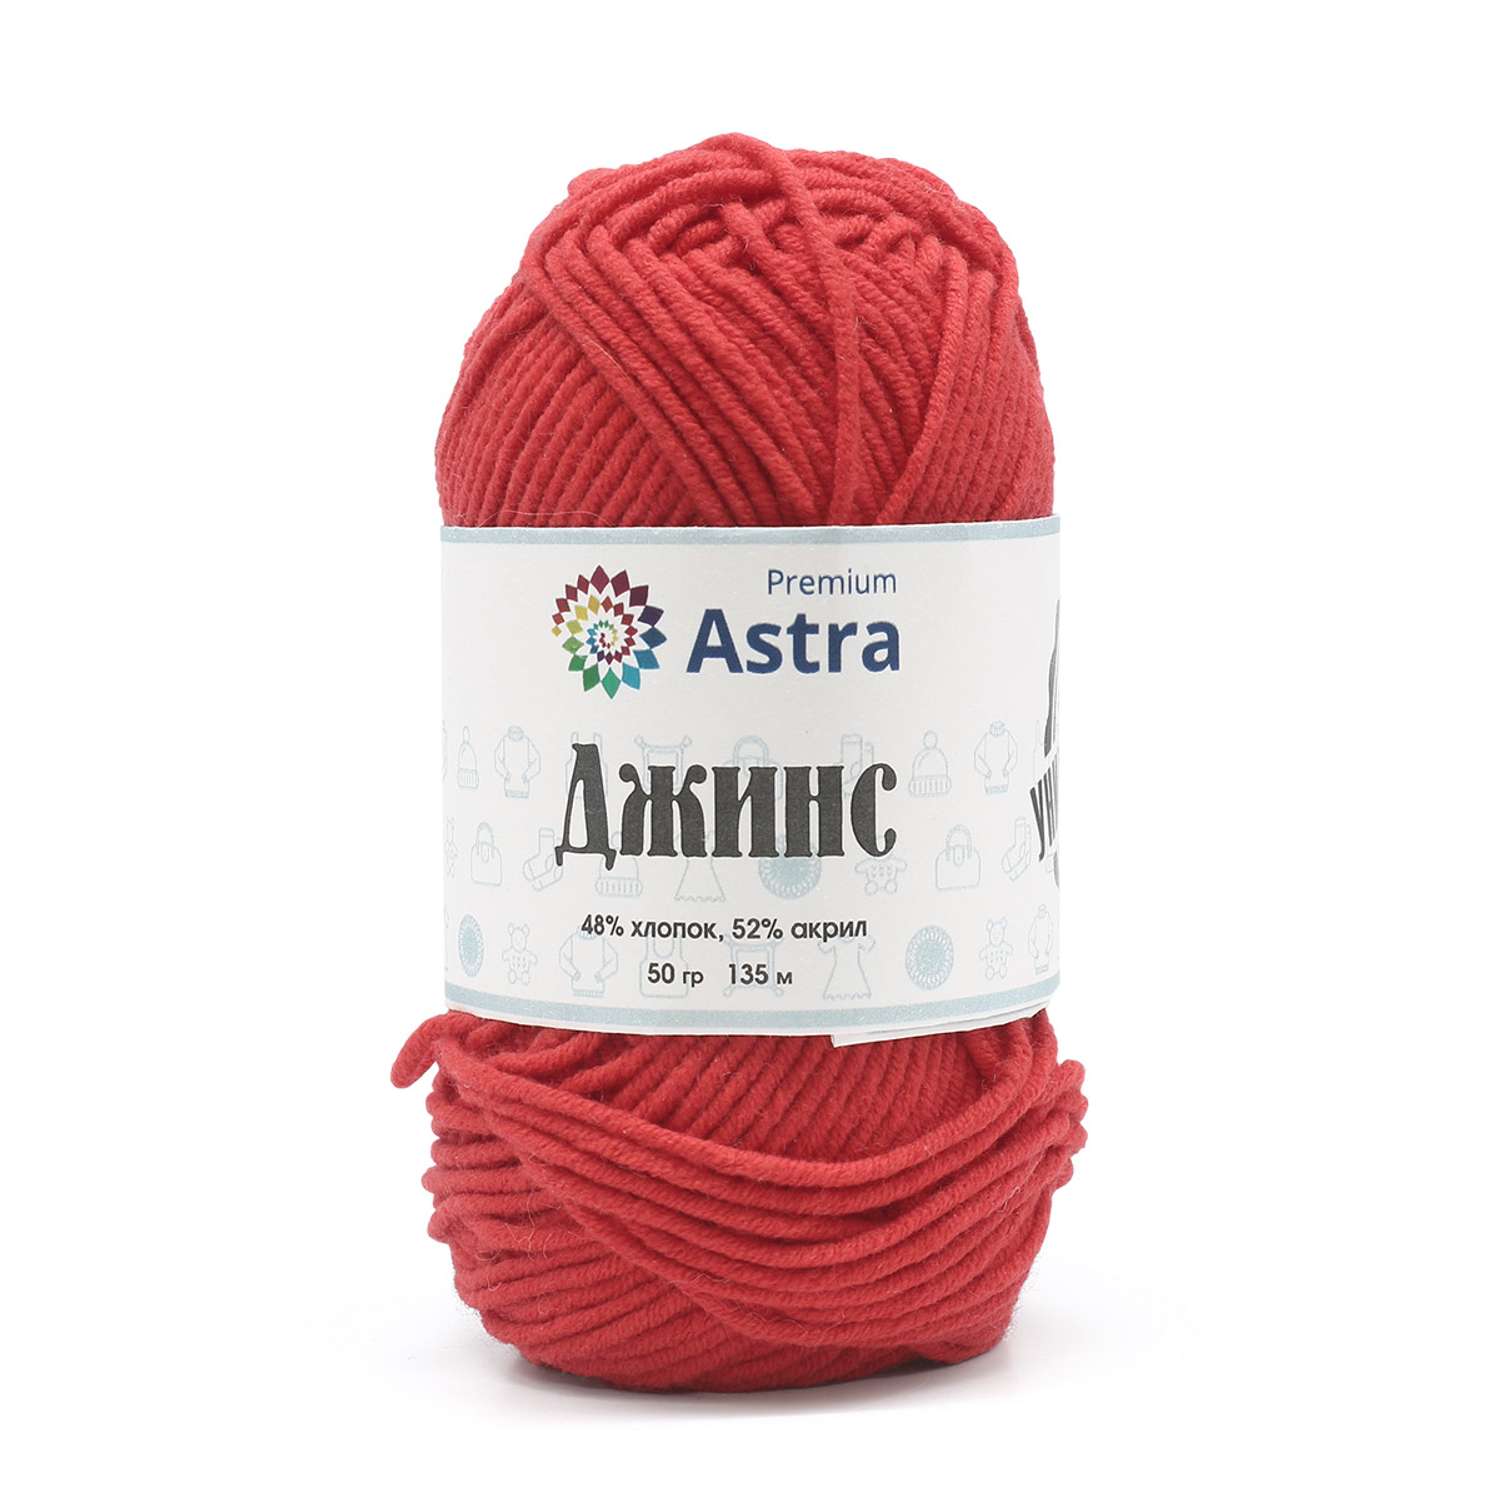 Пряжа для вязания Astra Premium джинс для повседневной одежды акрил хлопок 50 гр 135 м 150 красный 4 мотка - фото 7